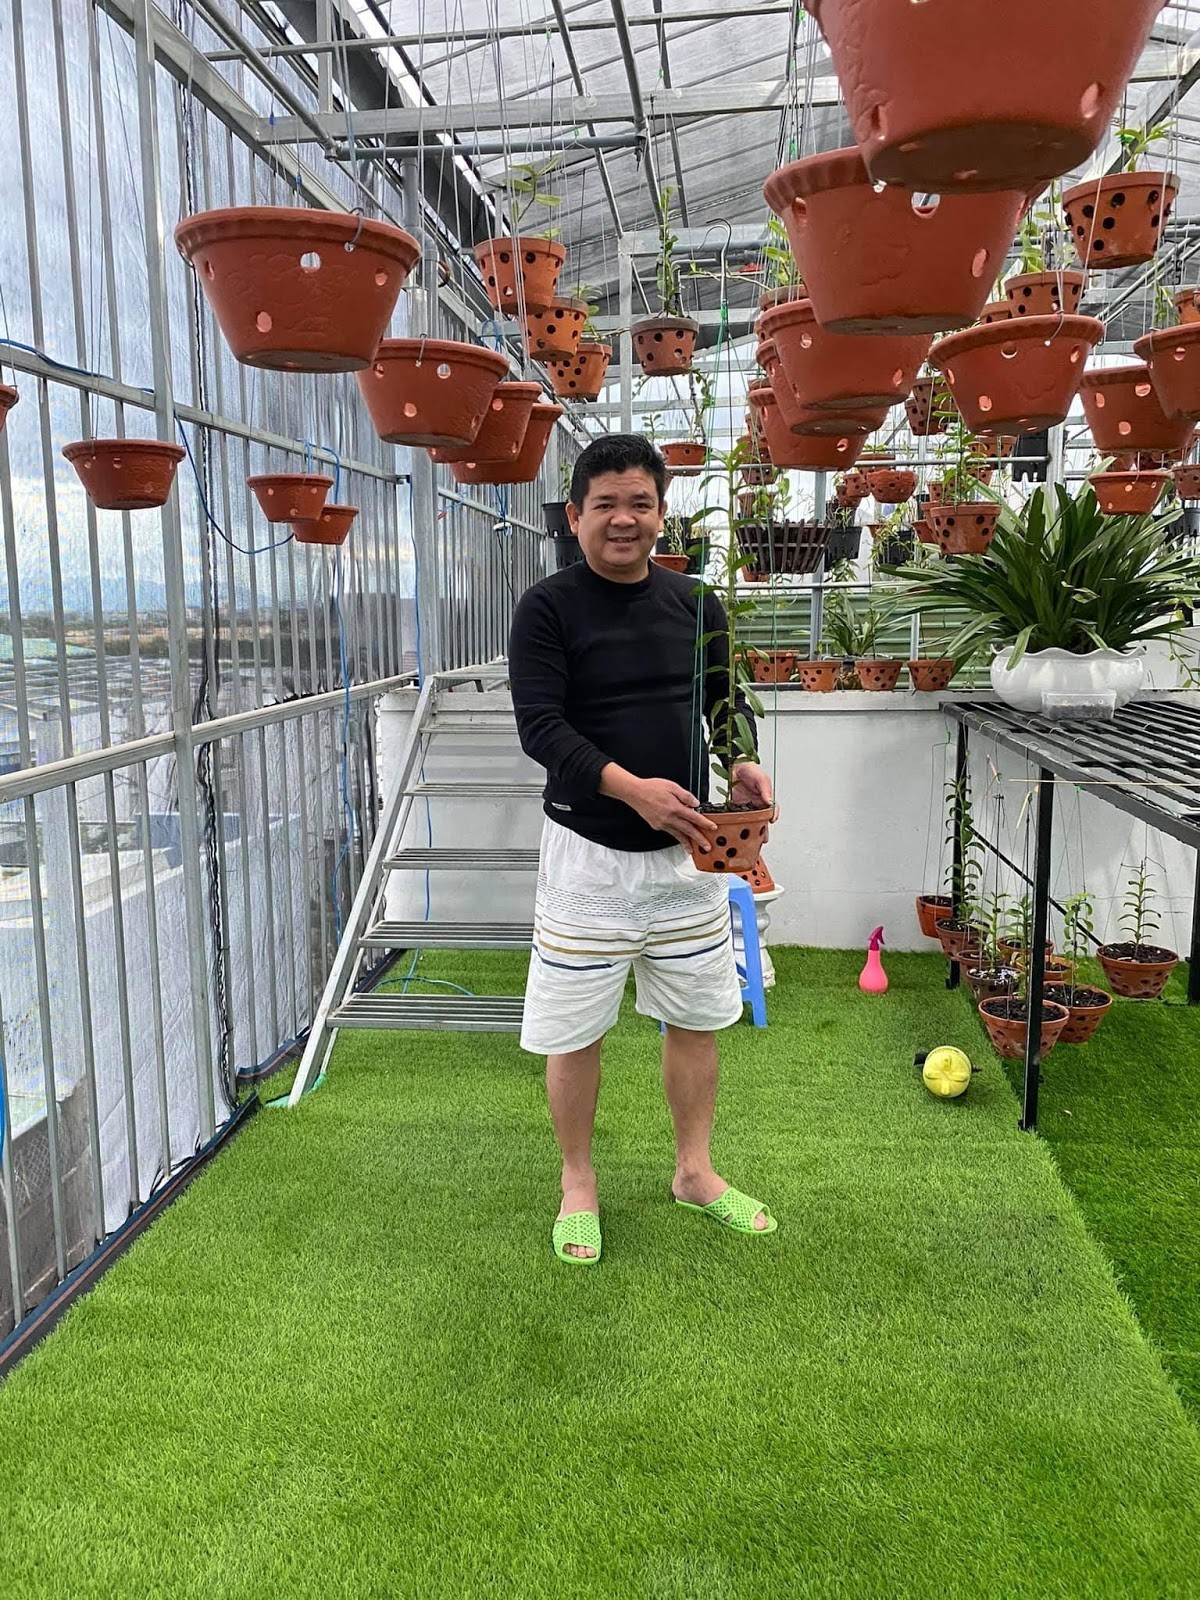  Anh Ba Huy (Nguyễn Ngọc Huy) hiện đang công tác tại Sở Tài nguyên & Môi trường tỉnh Bình Định và đồng thời nuôi dưỡng tình yêu với hoa lan 